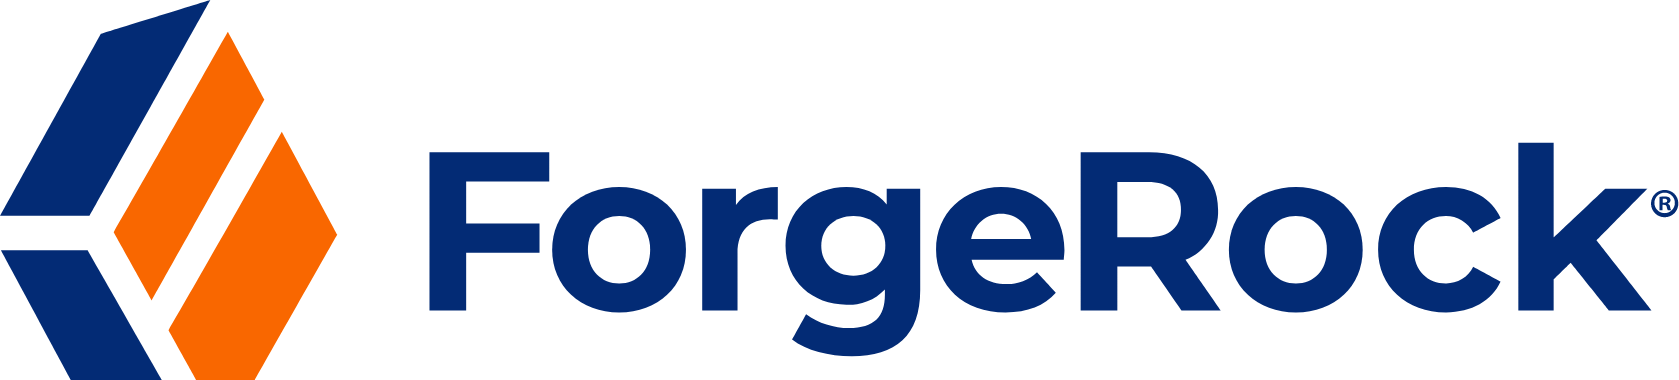 ForgeRock logo large (transparent PNG)